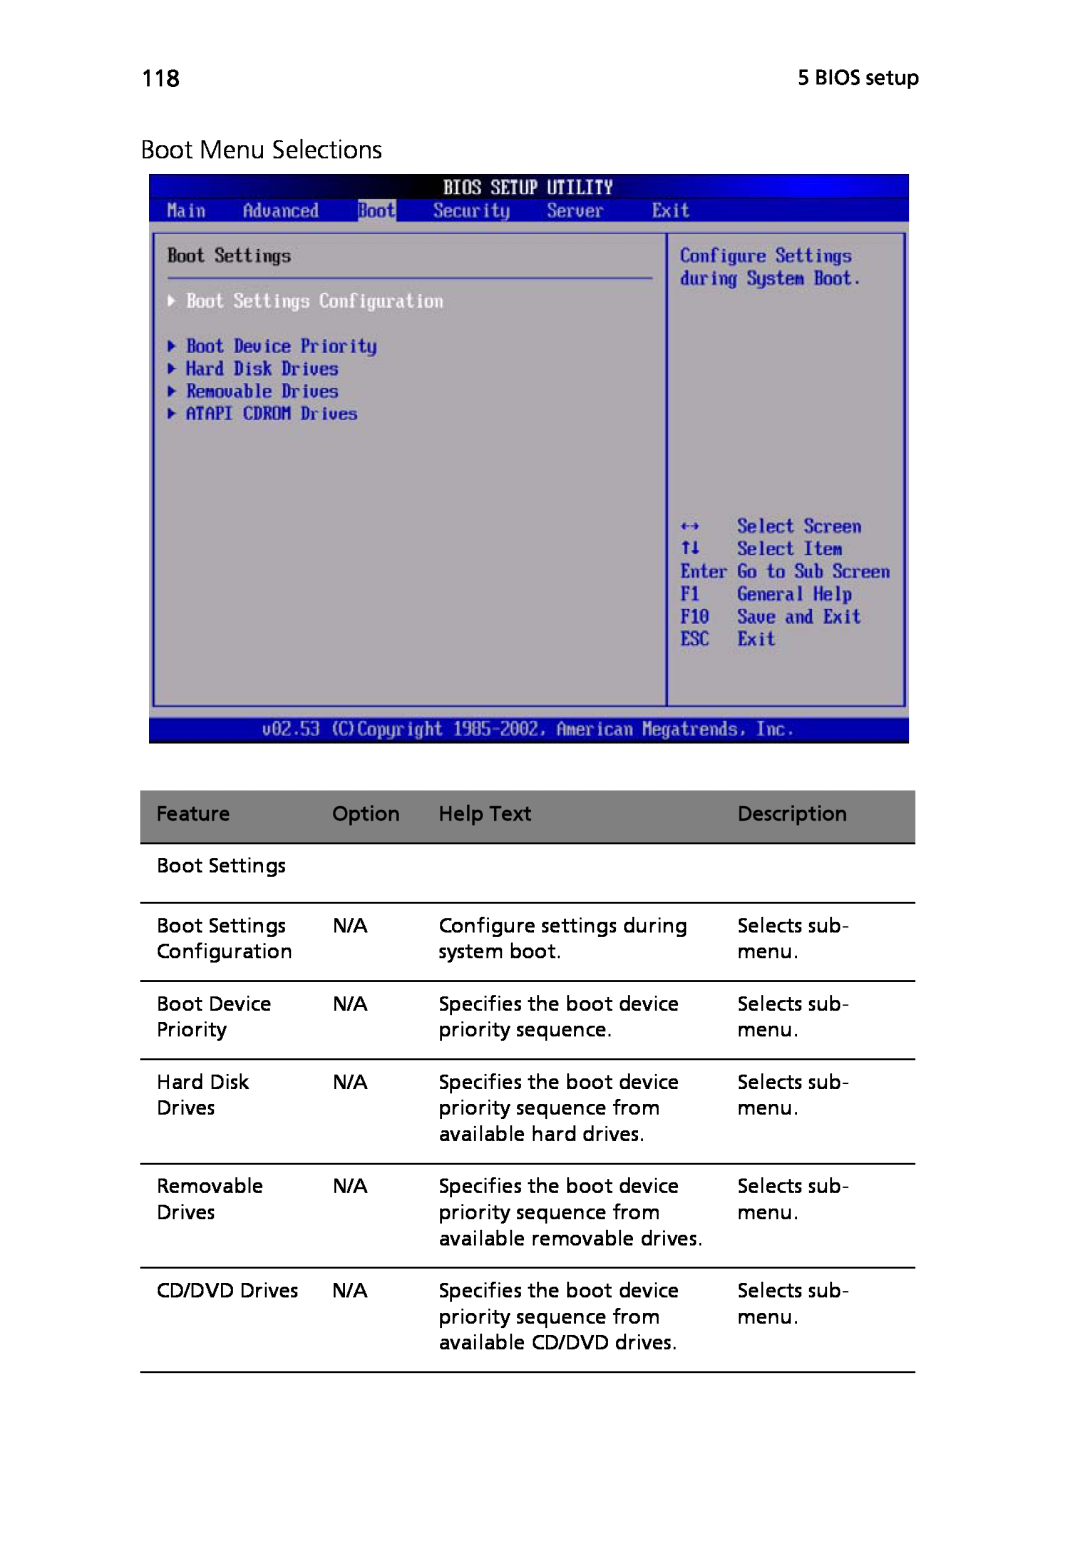 Acer Altos R710 manual Boot Menu Selections, Feature, Option, Help Text, Description 